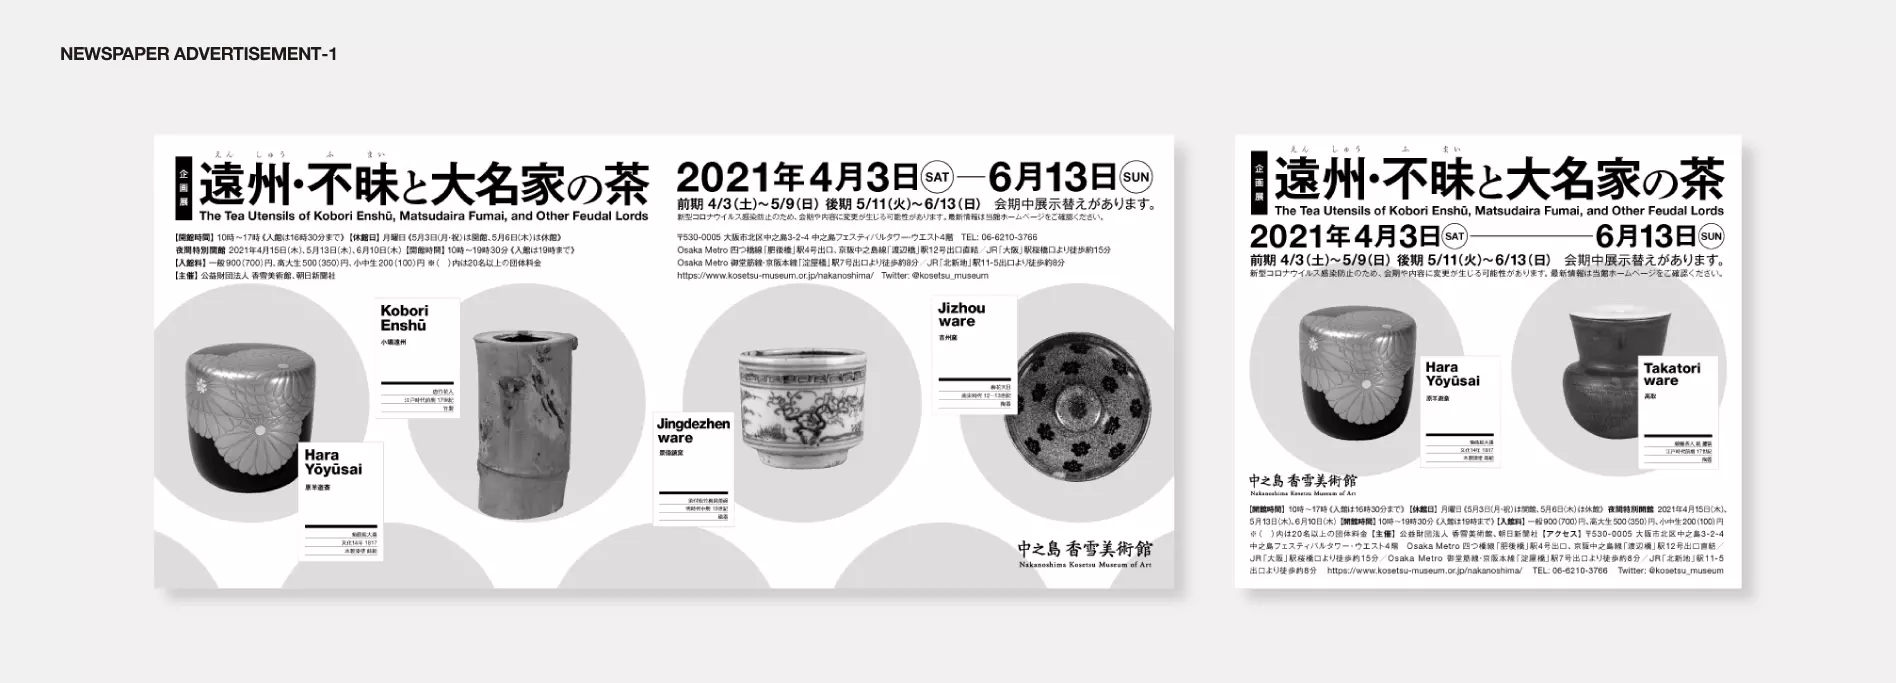 中之島香雪美術館_遠州・不昧展覧会新聞広告デザイン